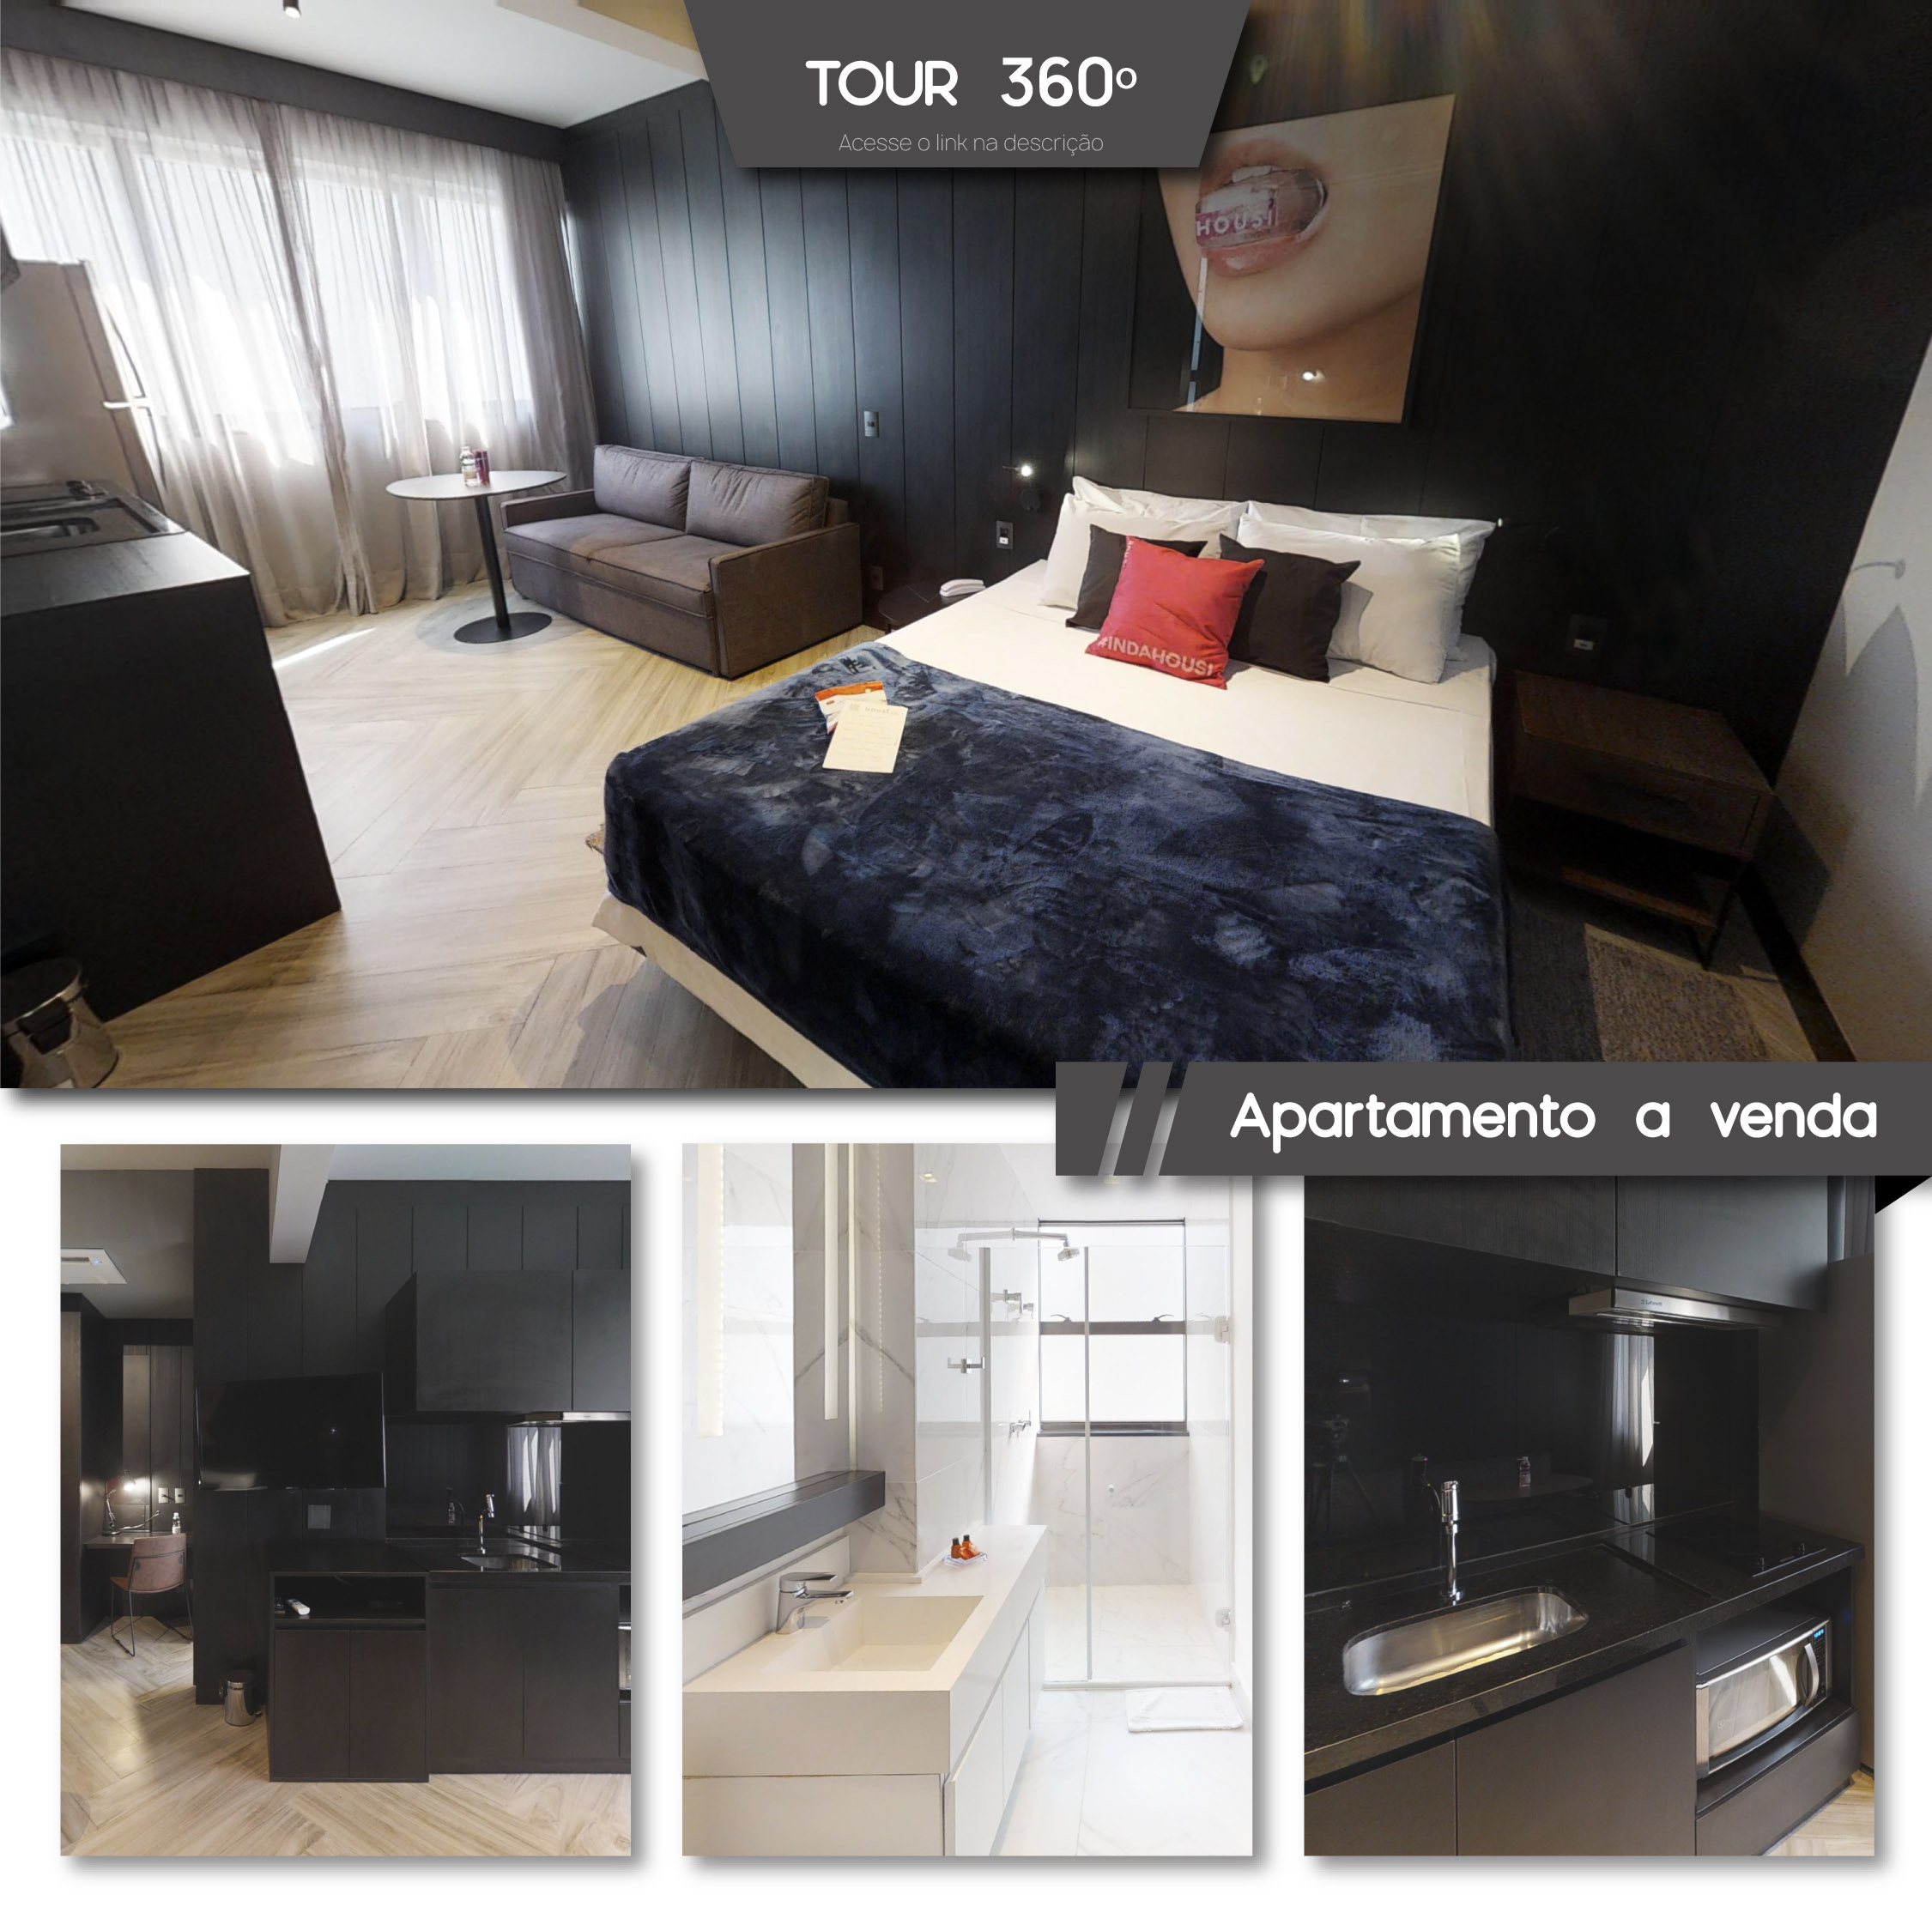 Tour-virtual-360º-venda-apartamento-decorado